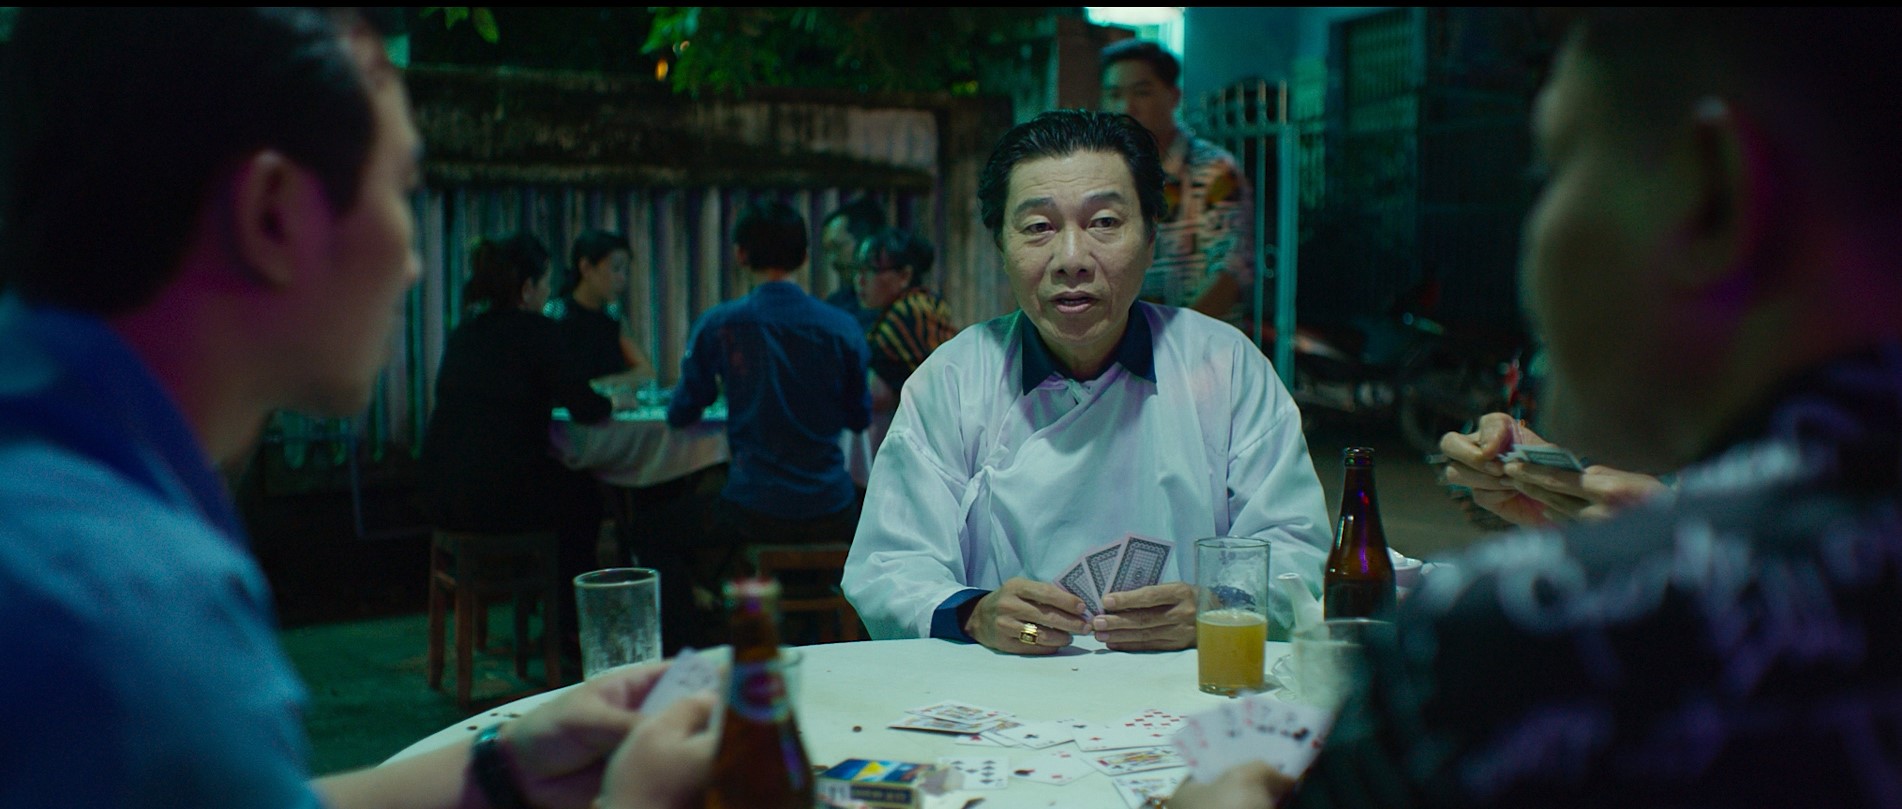 Đêm Tối Rực Rỡ: Phim Việt hay nhất năm 2022 lại không đến từ đạo diễn Việt, thật buồn... - Ảnh 10.